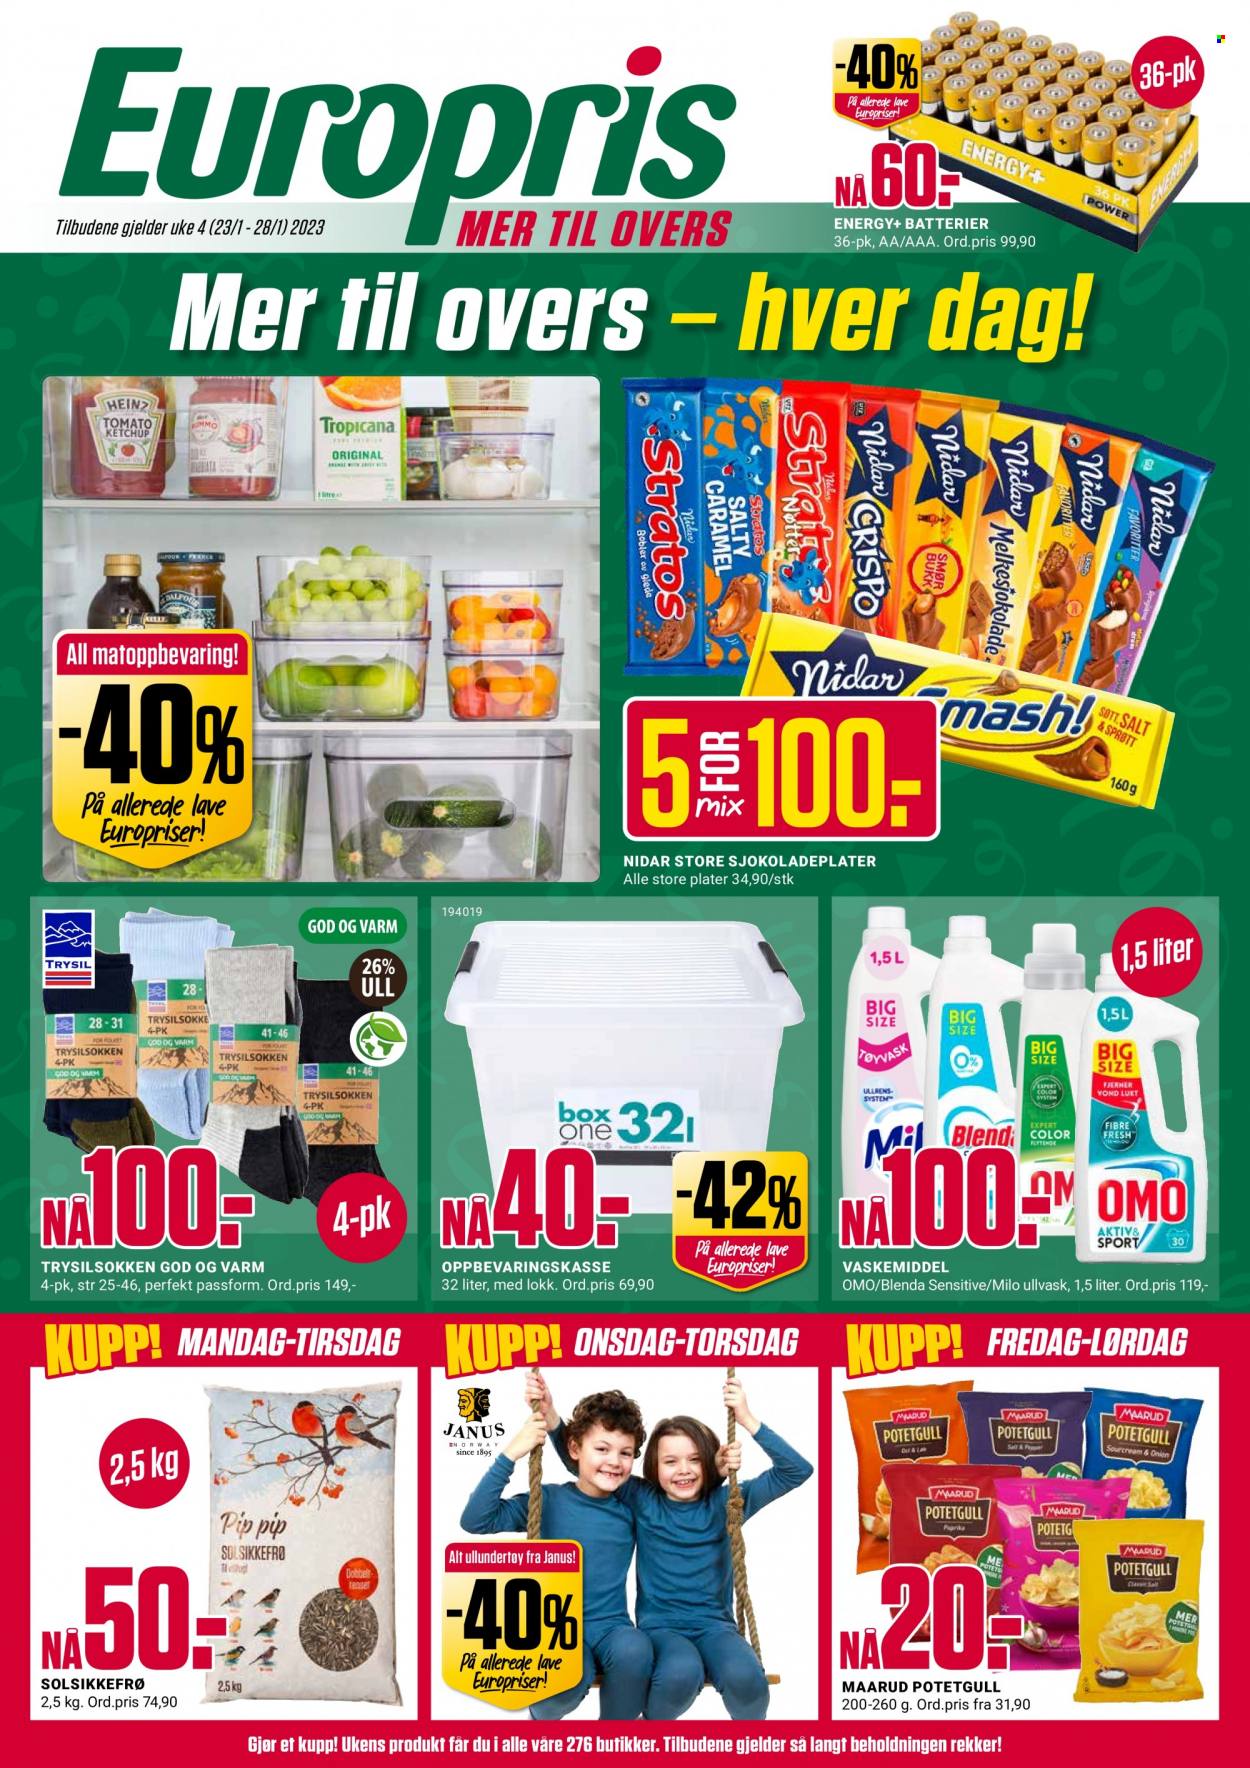 thumbnail - Kundeavis Europris - 23.1.2023 - 28.1.2023 - Produkter fra tilbudsaviser - solsikkefrø, Omo, vaskemiddel. Side 1.